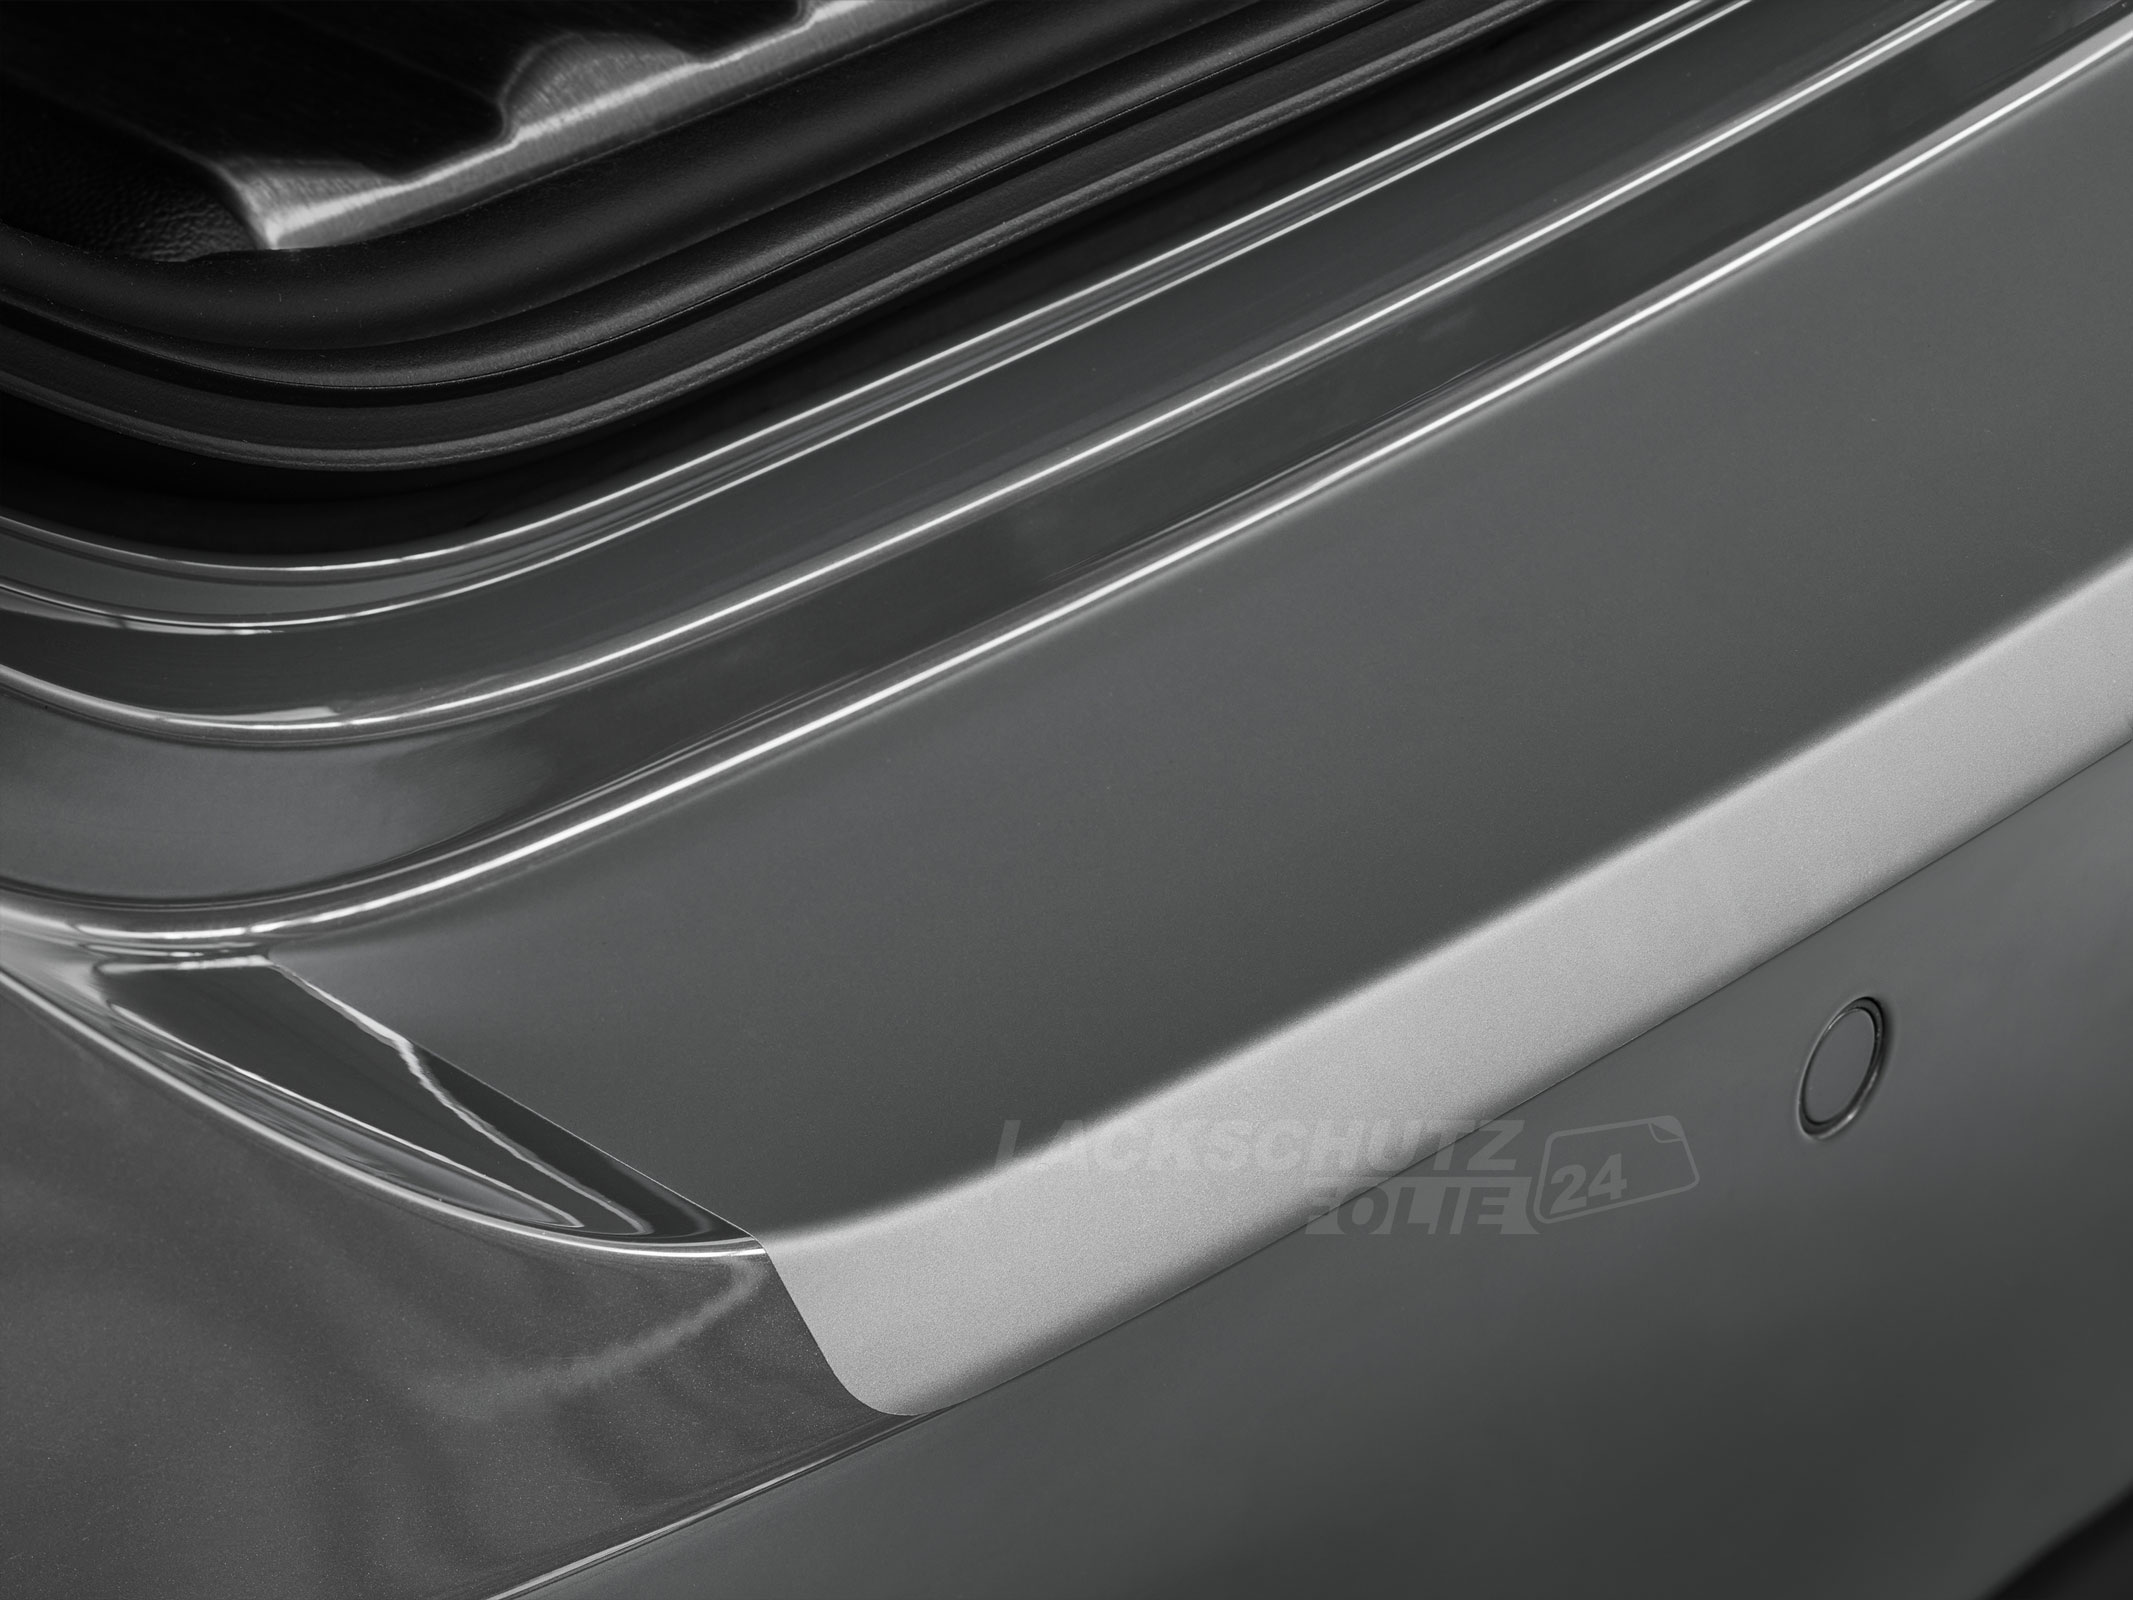 Ladekantenschutzfolie - Transparent Glatt MATT 110 µm stark  für Hyundai Veloster ab BJ 2011